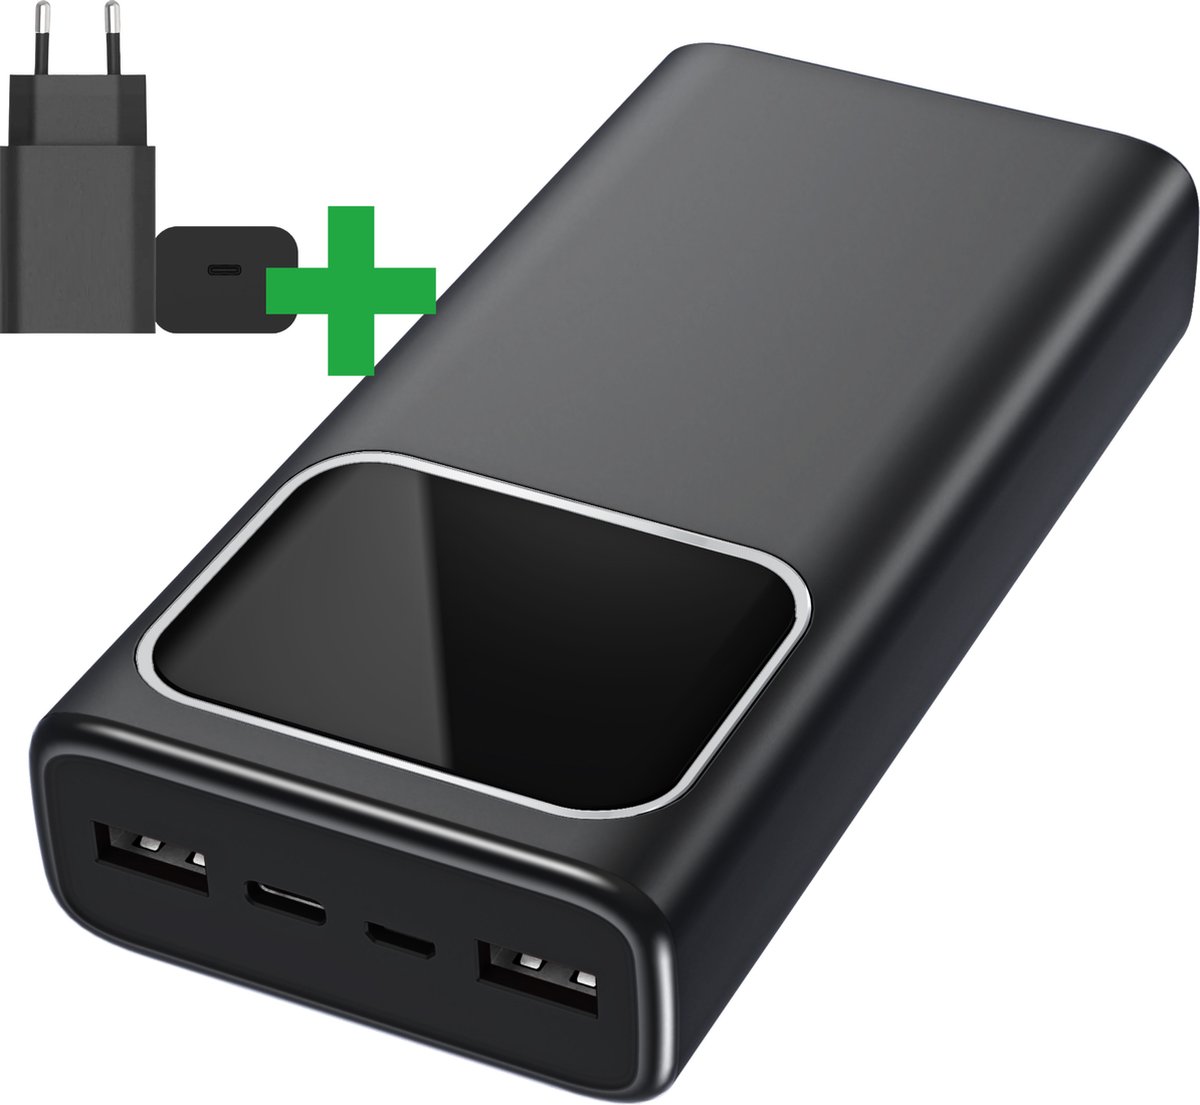 IMOSHION® Batterie Externe 20000mAh Recharge Rapide USB-C micro